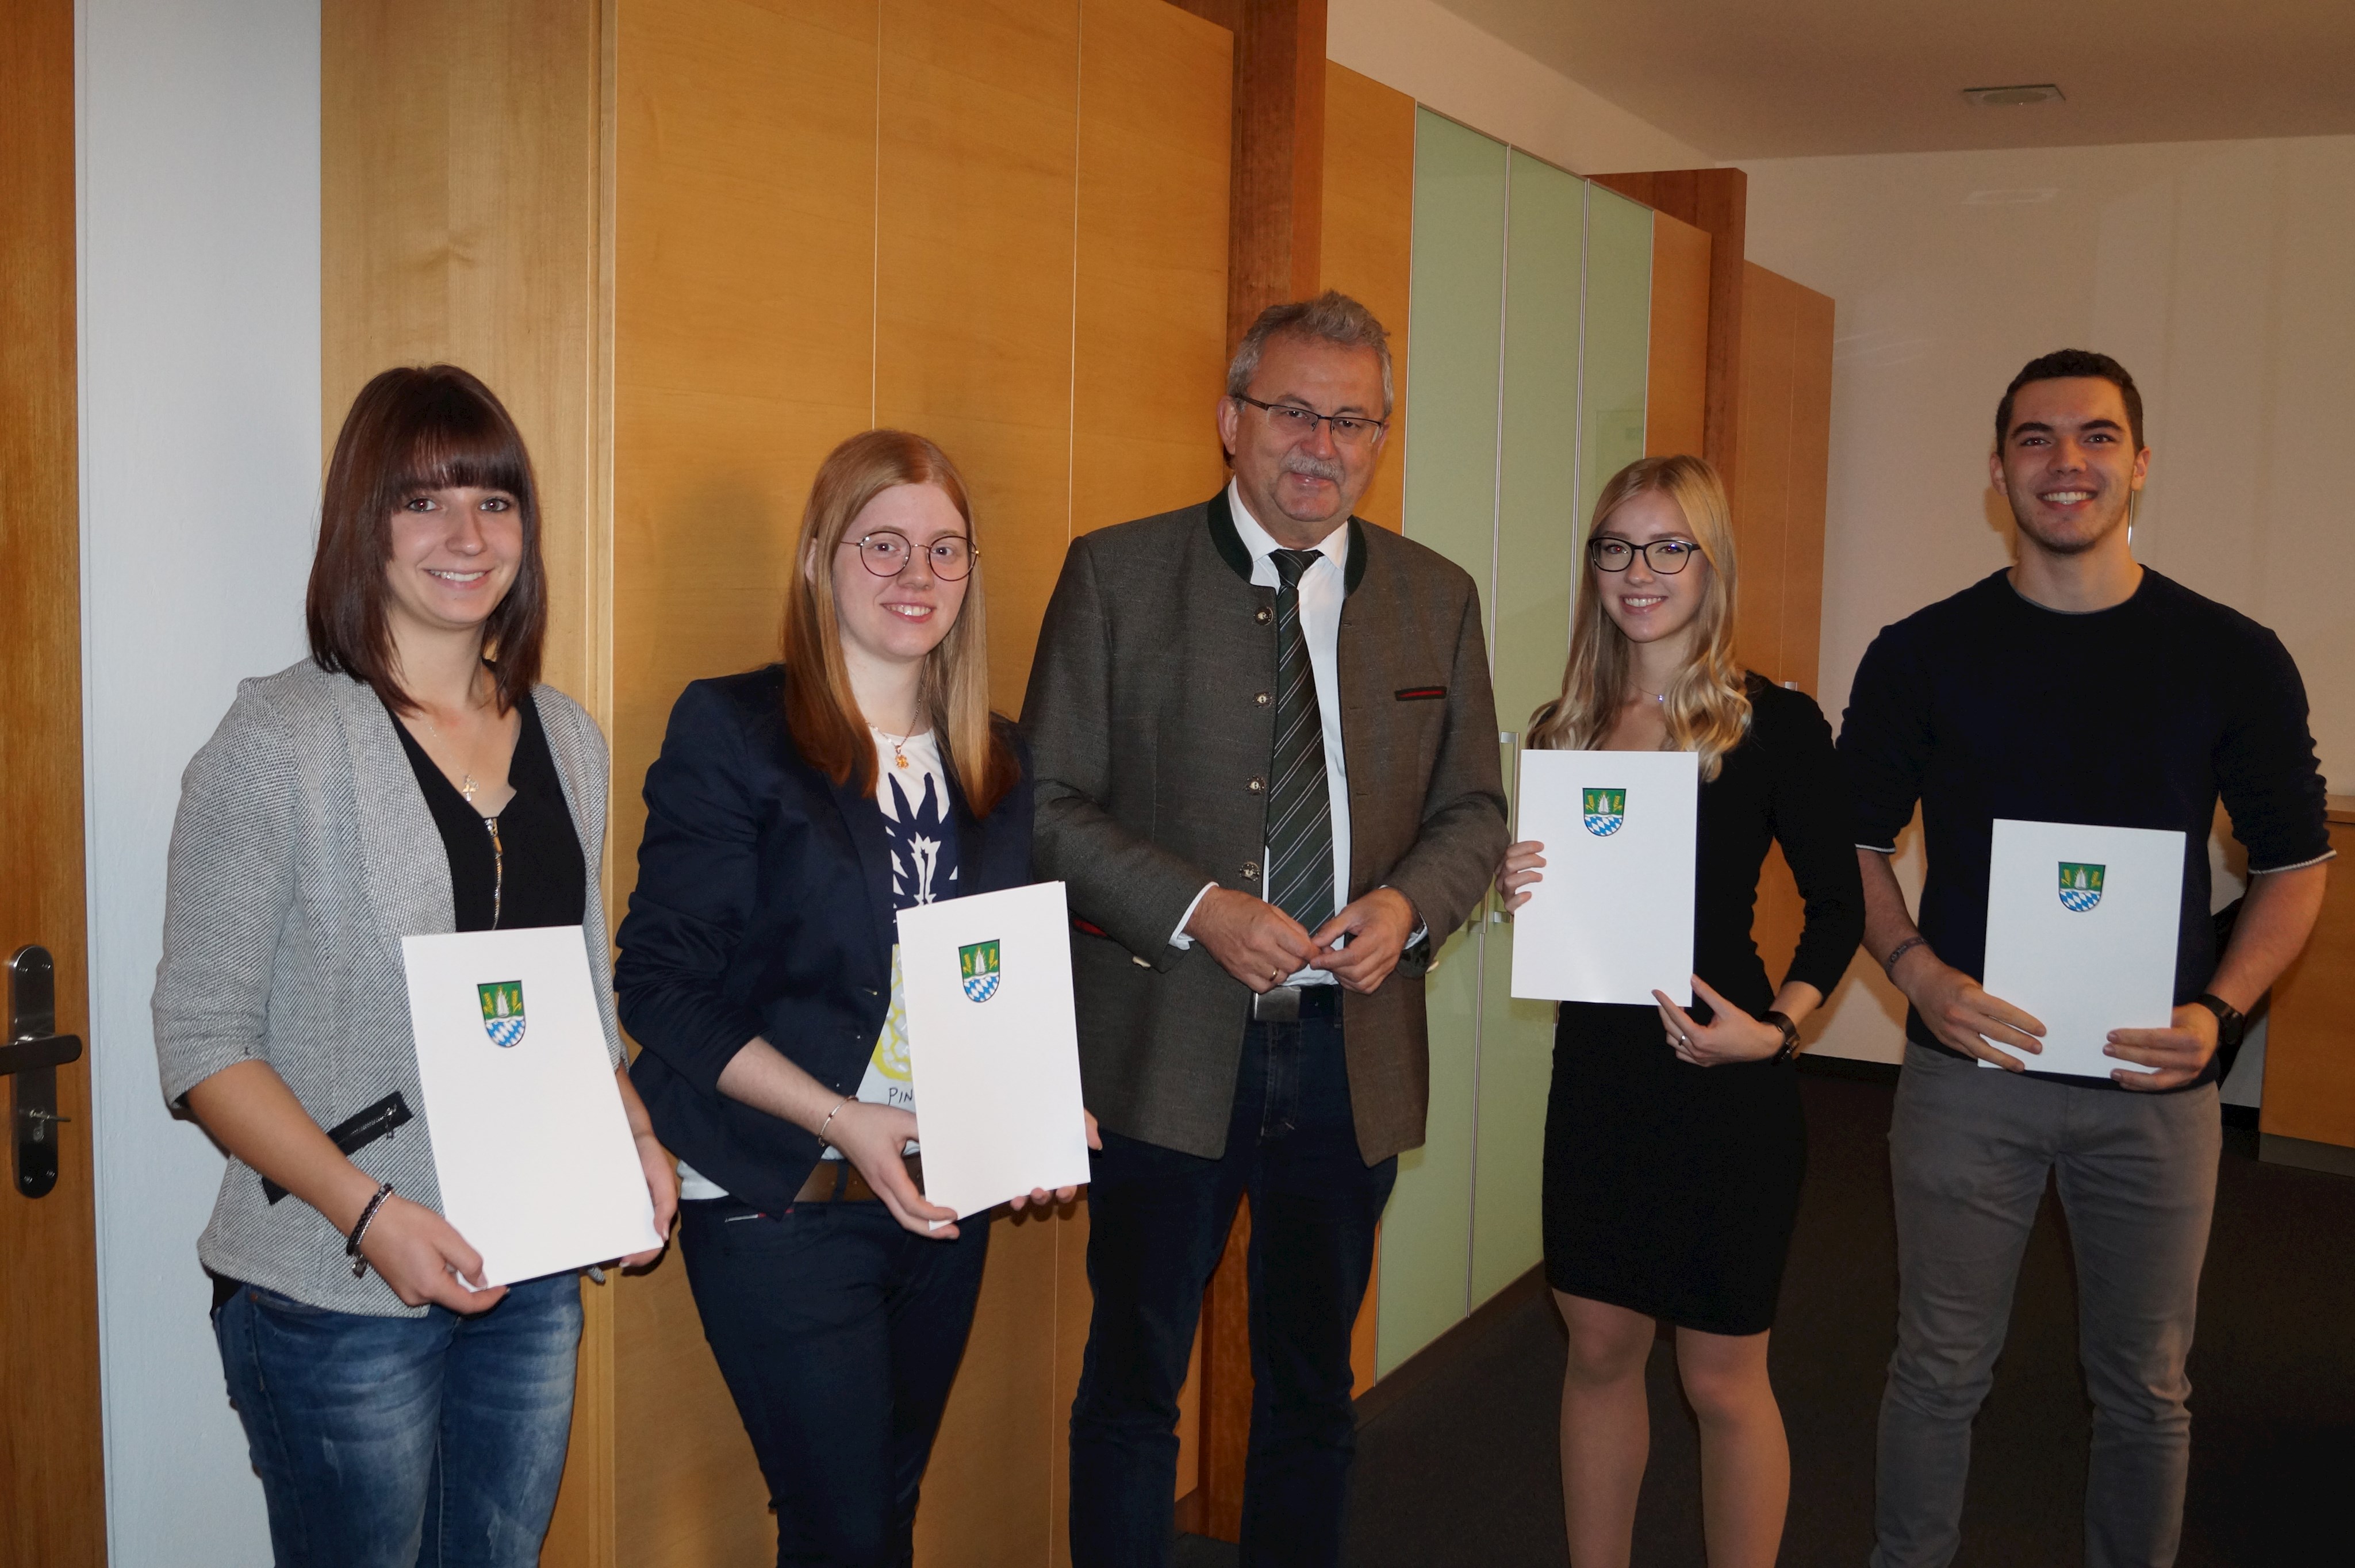 Anja Grundner, Lena Schmalzl, Laura Tremmel und Michael Ludwig (von links) werden von Landrat Josef Laumer persönlich in seinem Büro für ihre hervorragenden Leistungen beglückwünscht.